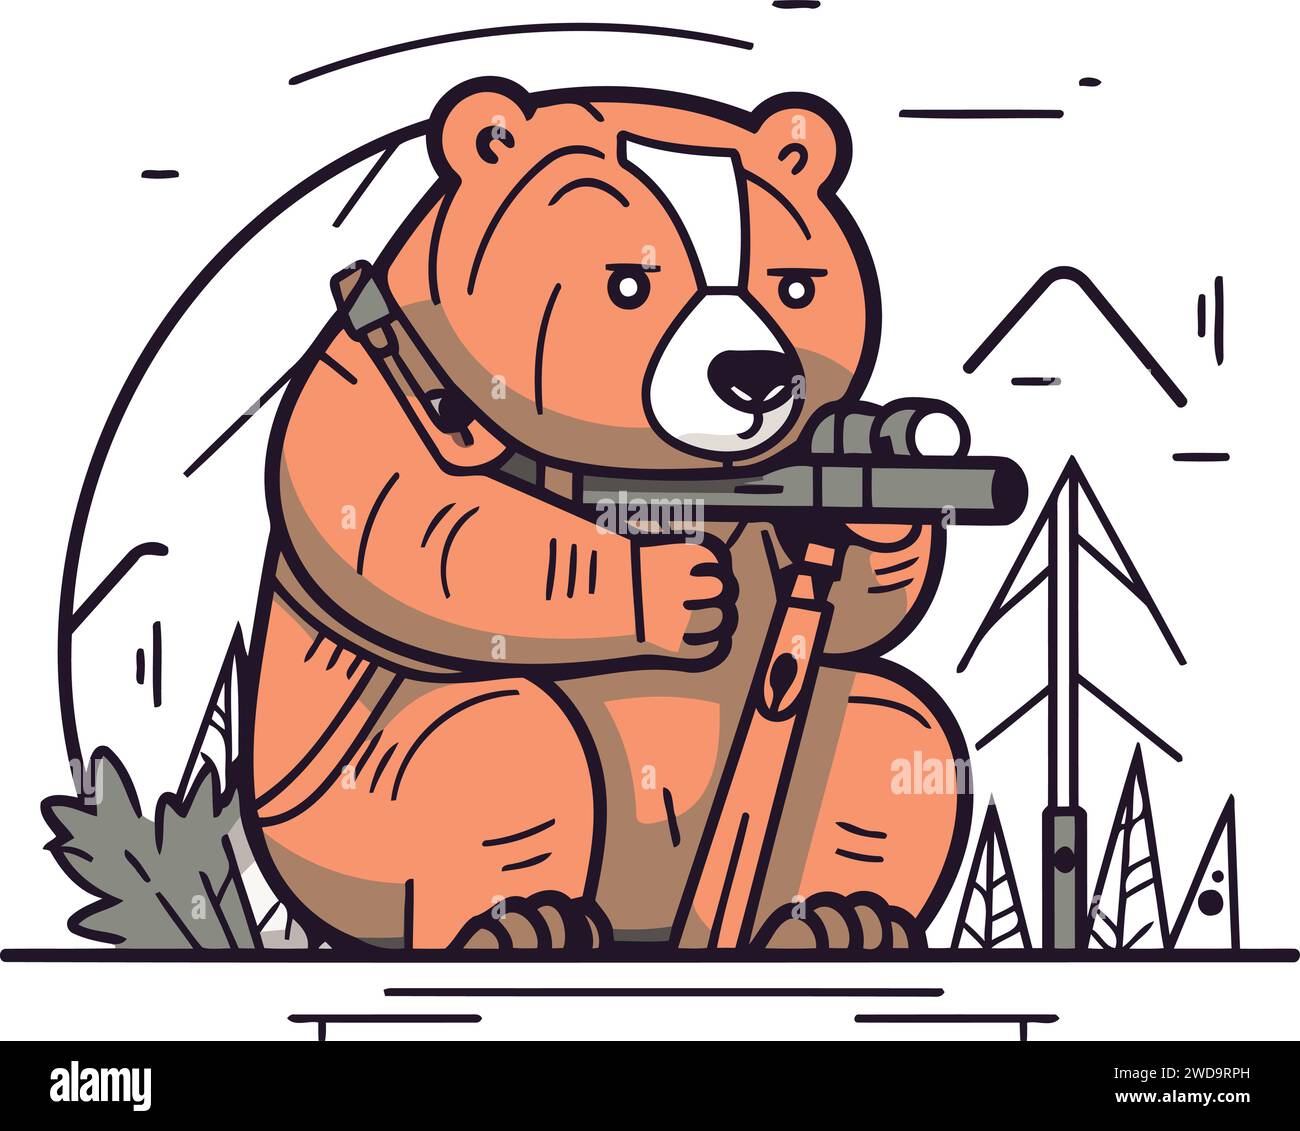 Vektor-Illustration eines süßen Bären mit einer Waffe in den Händen. Lineare Ausführung. Stock Vektor